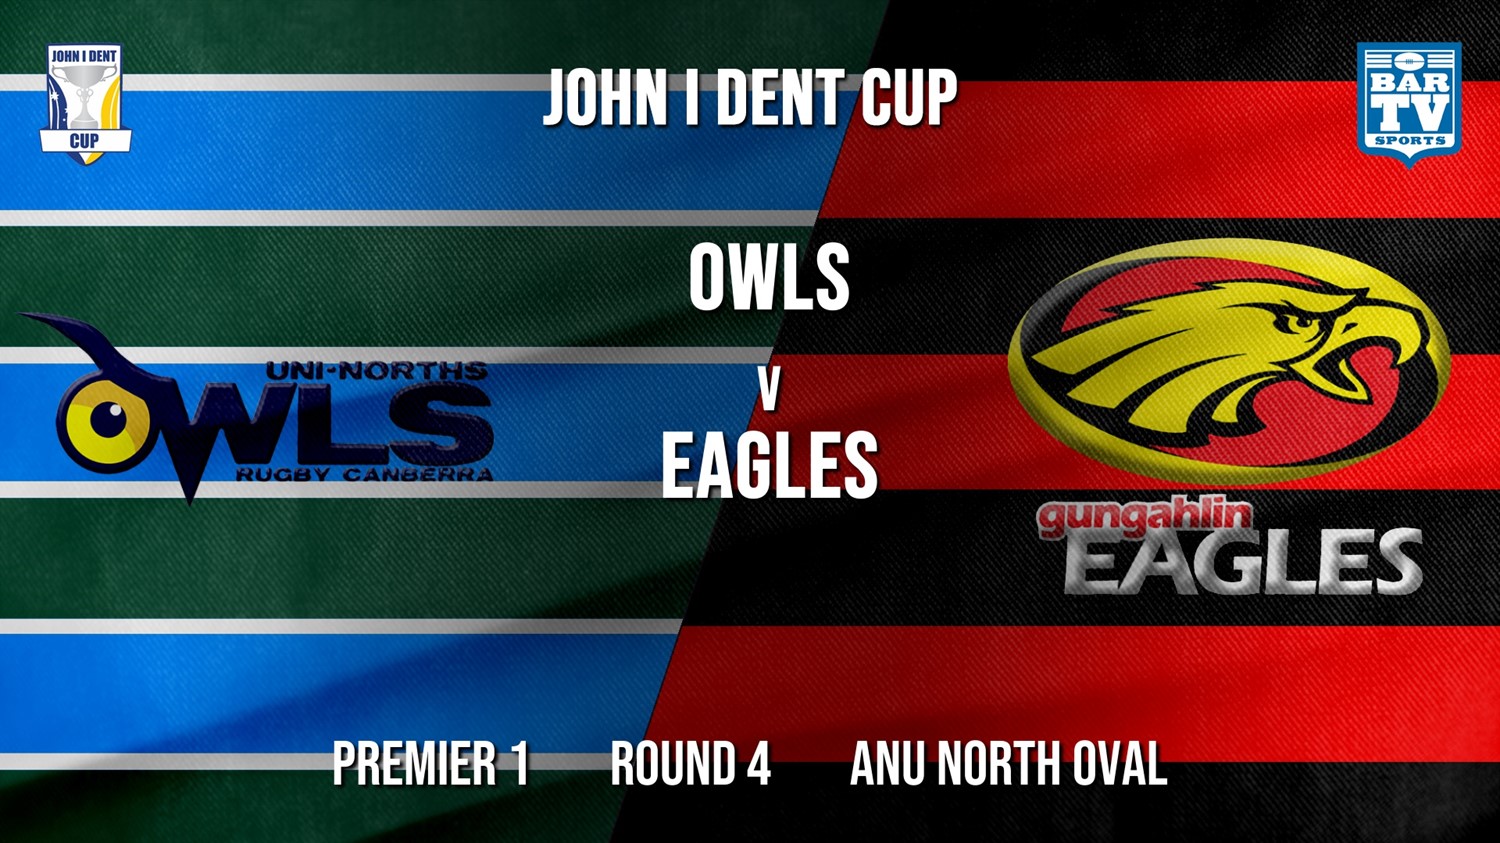 John I Dent Round 4 - Premier 1 - UNI-Norths v Gungahlin Eagles Minigame Slate Image